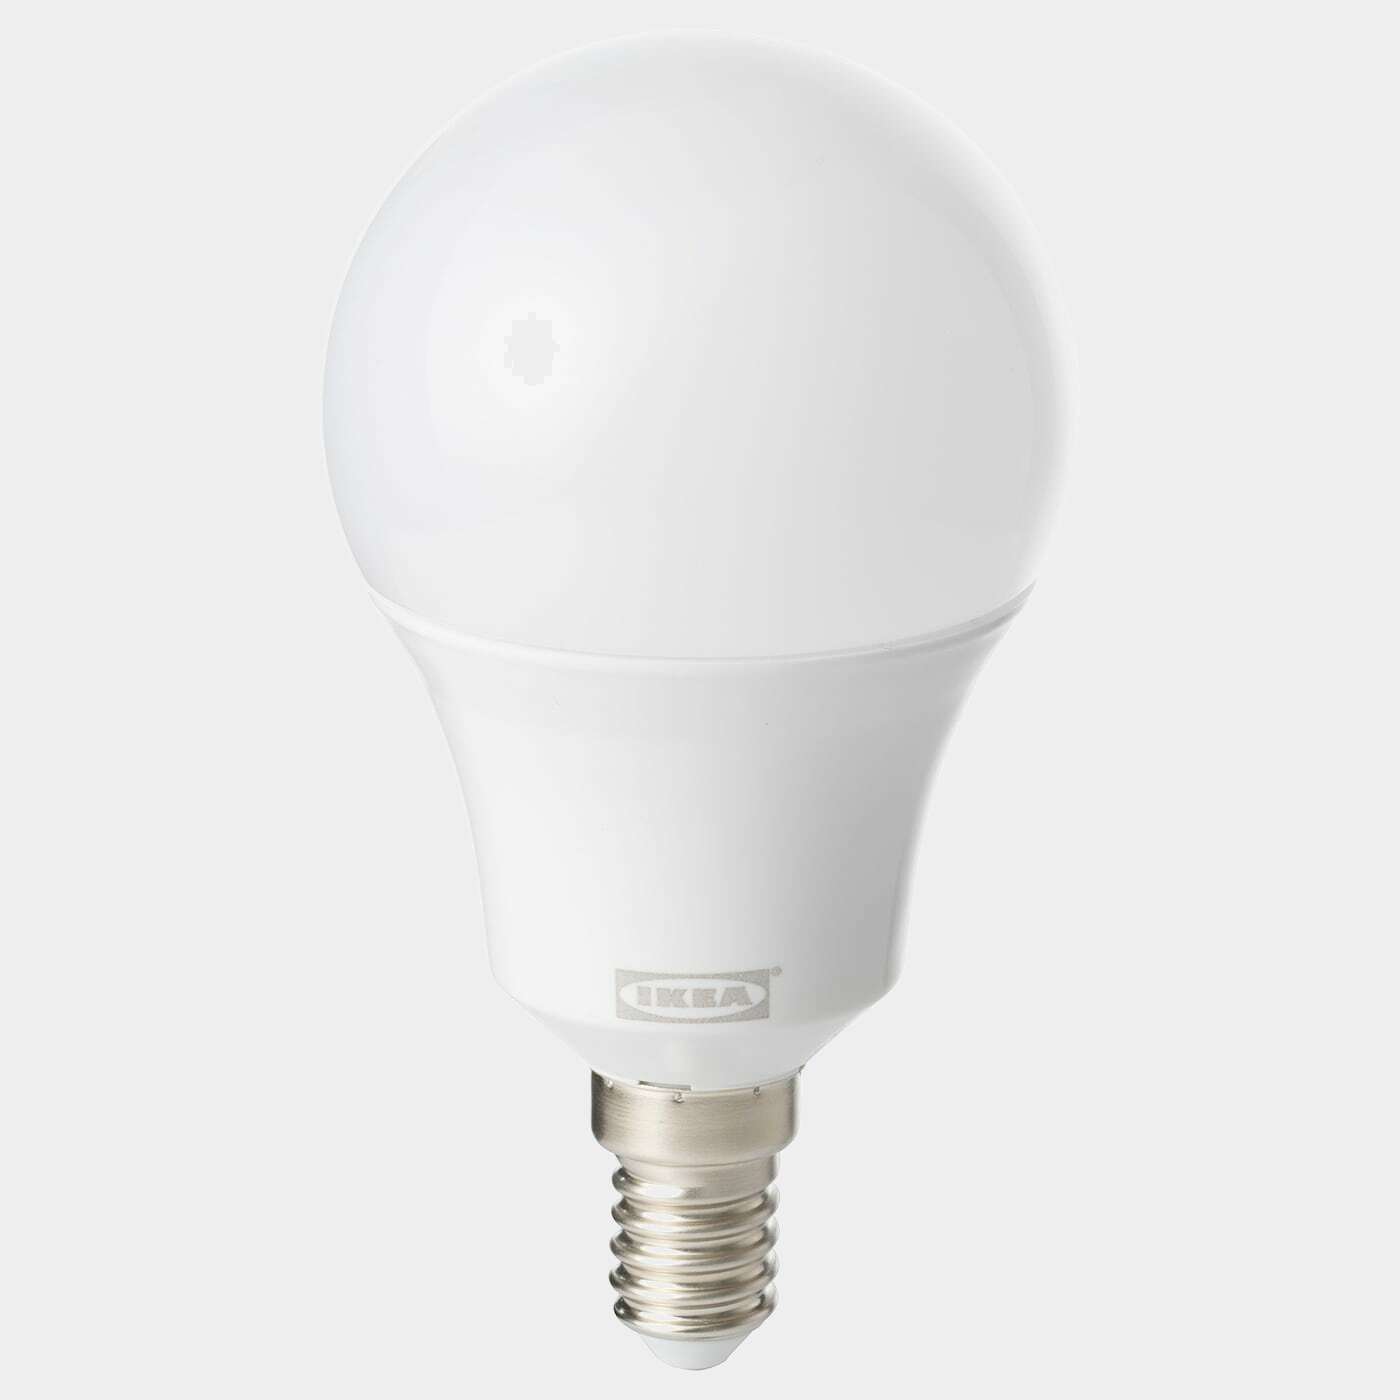 TRÅDFRI LED-Leuchtmittel E14 600 lm  -  - Beleuchtung Ideen für dein Zuhause von Home Trends. Beleuchtung Trends von Social Media Influencer für dein Skandi Zuhause.